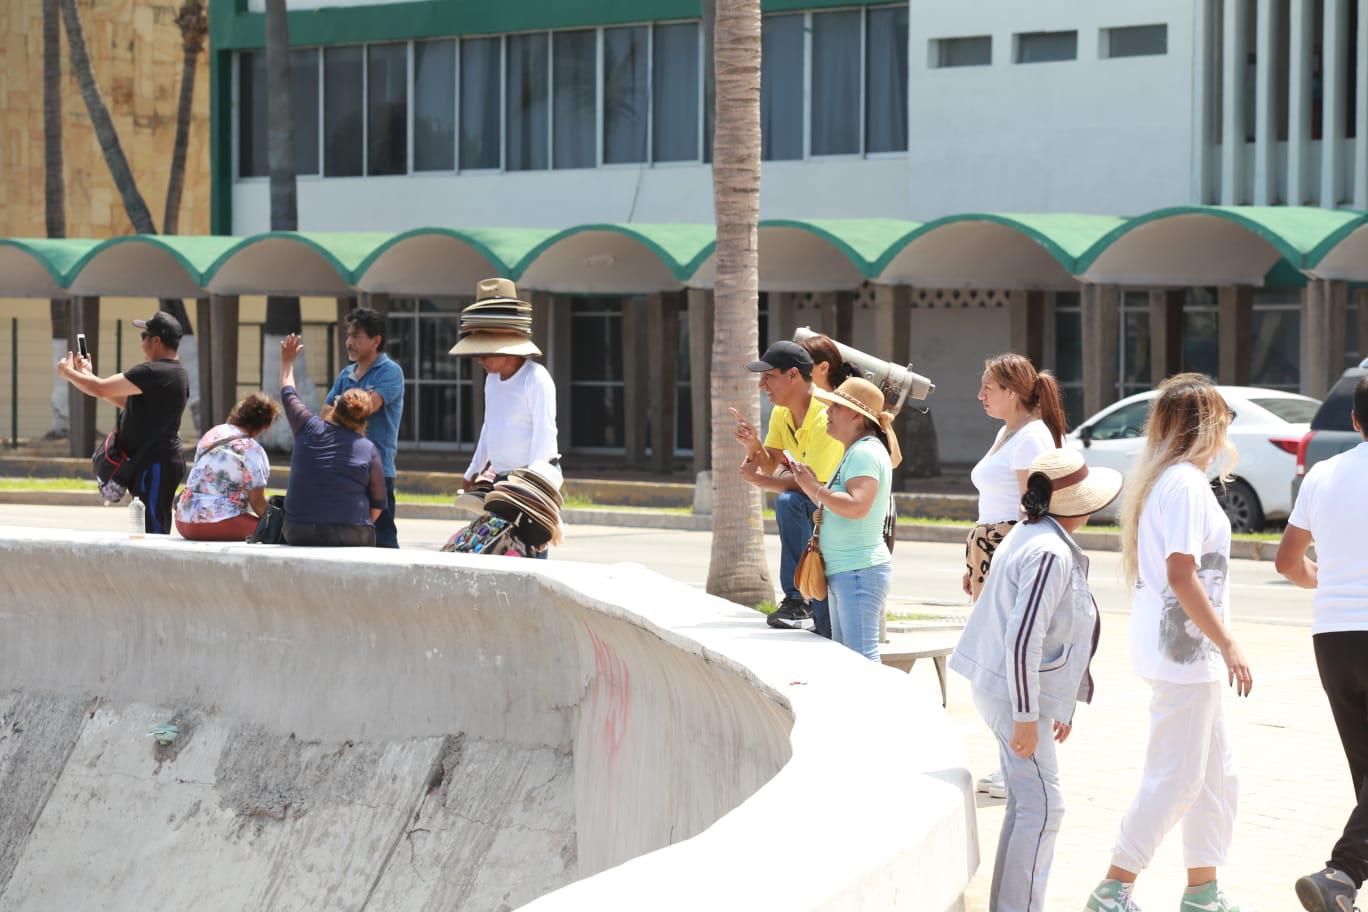 $!Tiene Coparmex altas expectativas del periodo vacacional de verano en Mazatlán